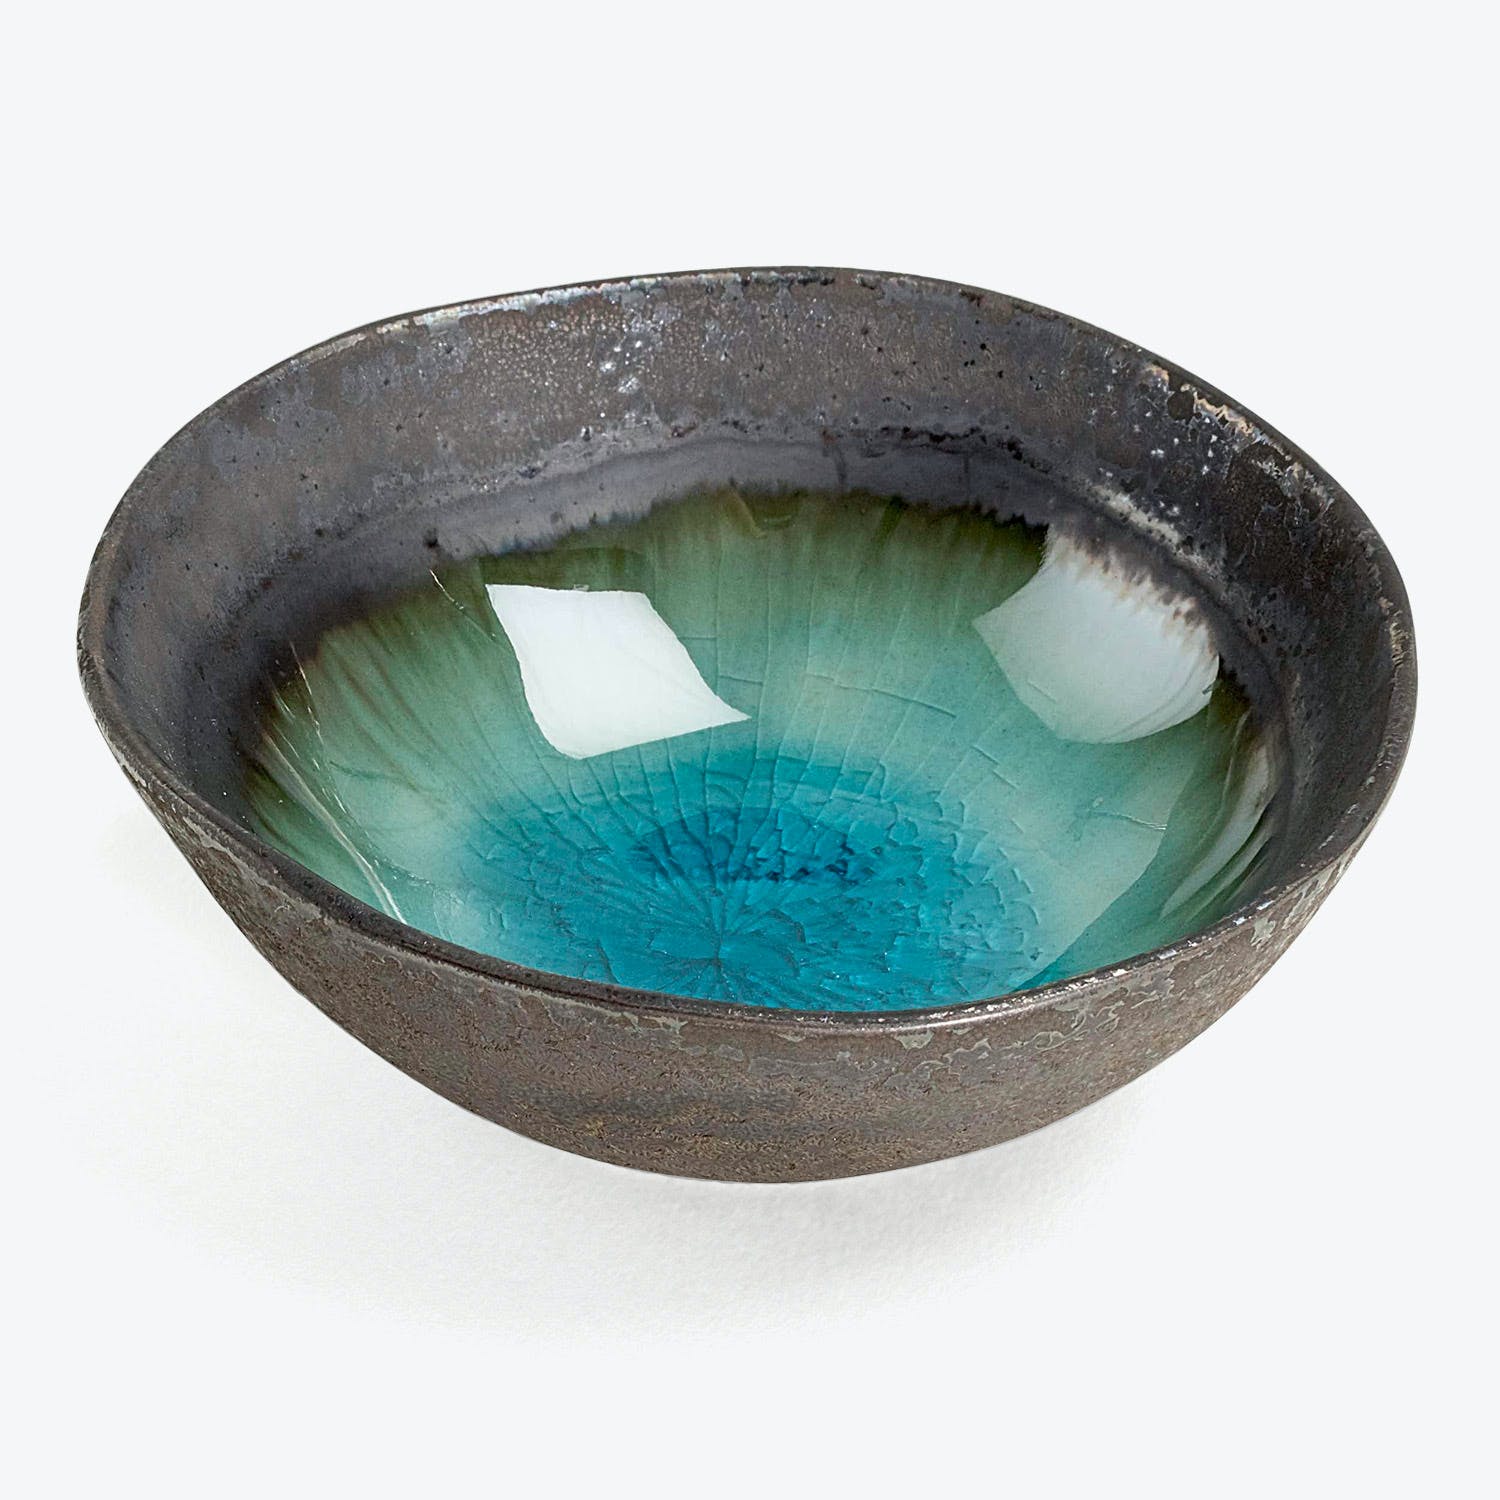 Artistic ceramic bowl with dark metallic exterior and vibrant turquoise interior